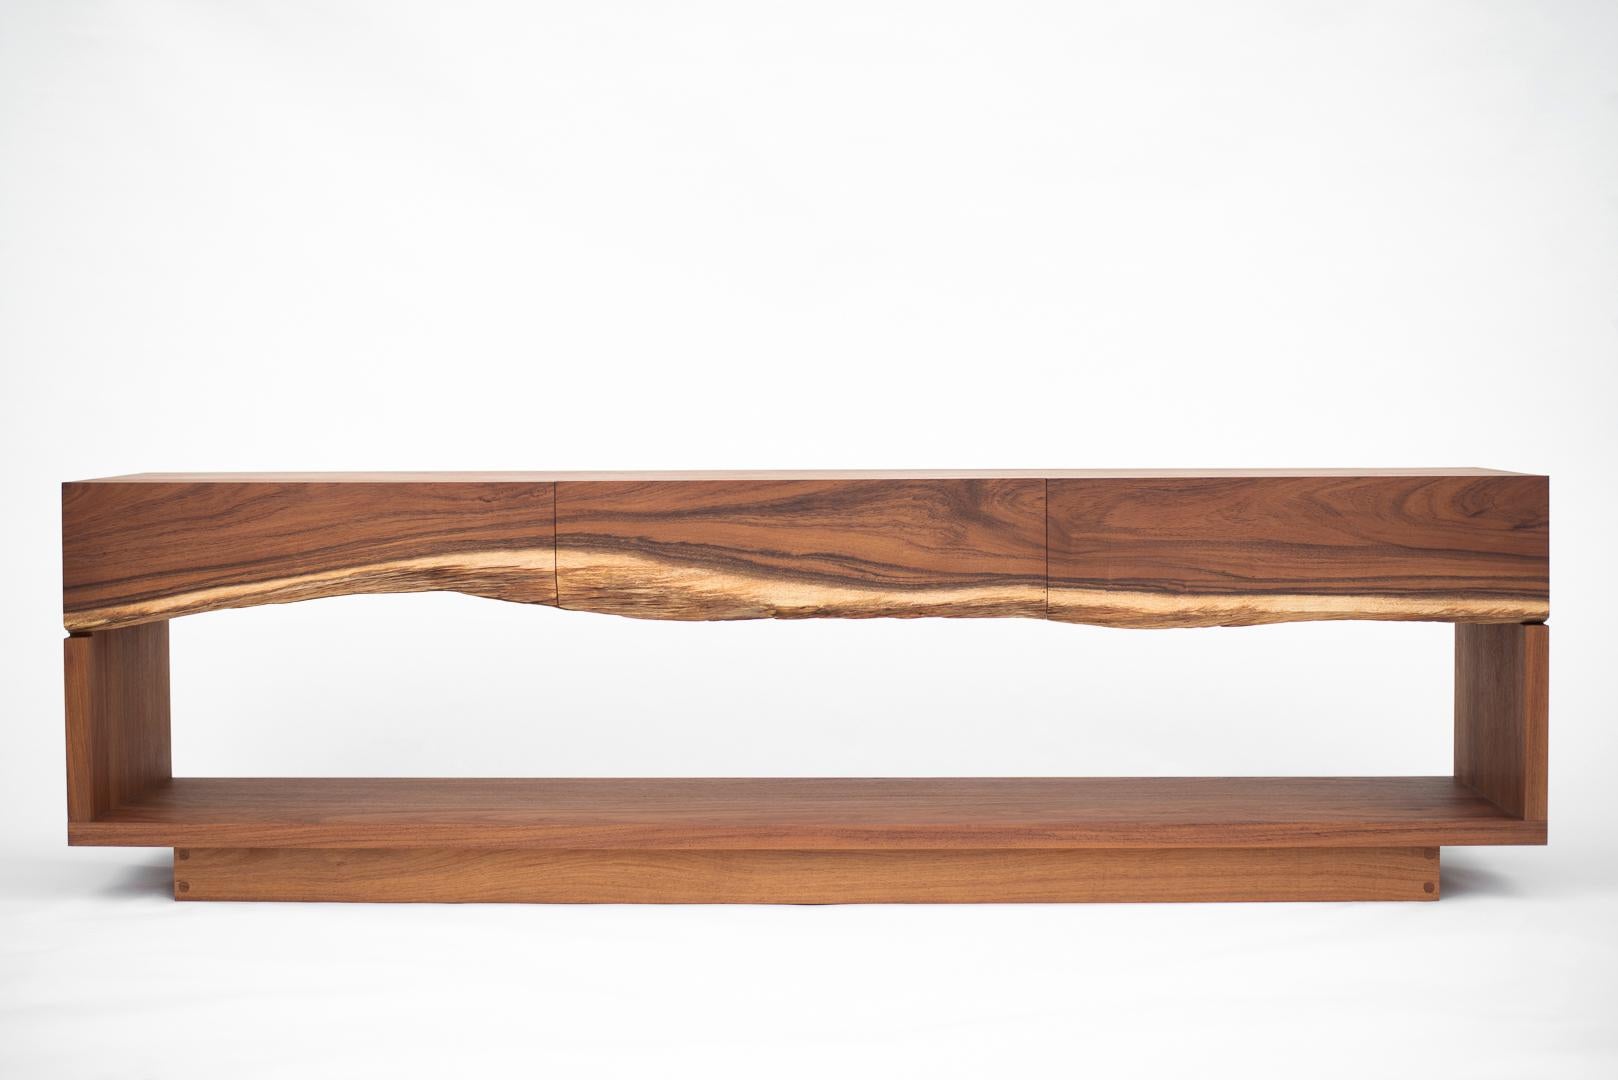 Ein Sideboard mit drei Schubladen, gefertigt aus einem einzigen Brett aus natürlichem karibischem Nussbaumholz.
Die schlichte und leichte Konstruktion dieses Möbelstücks zielt darauf ab, die Schönheit des Tropenholzes hervorzuheben und seine